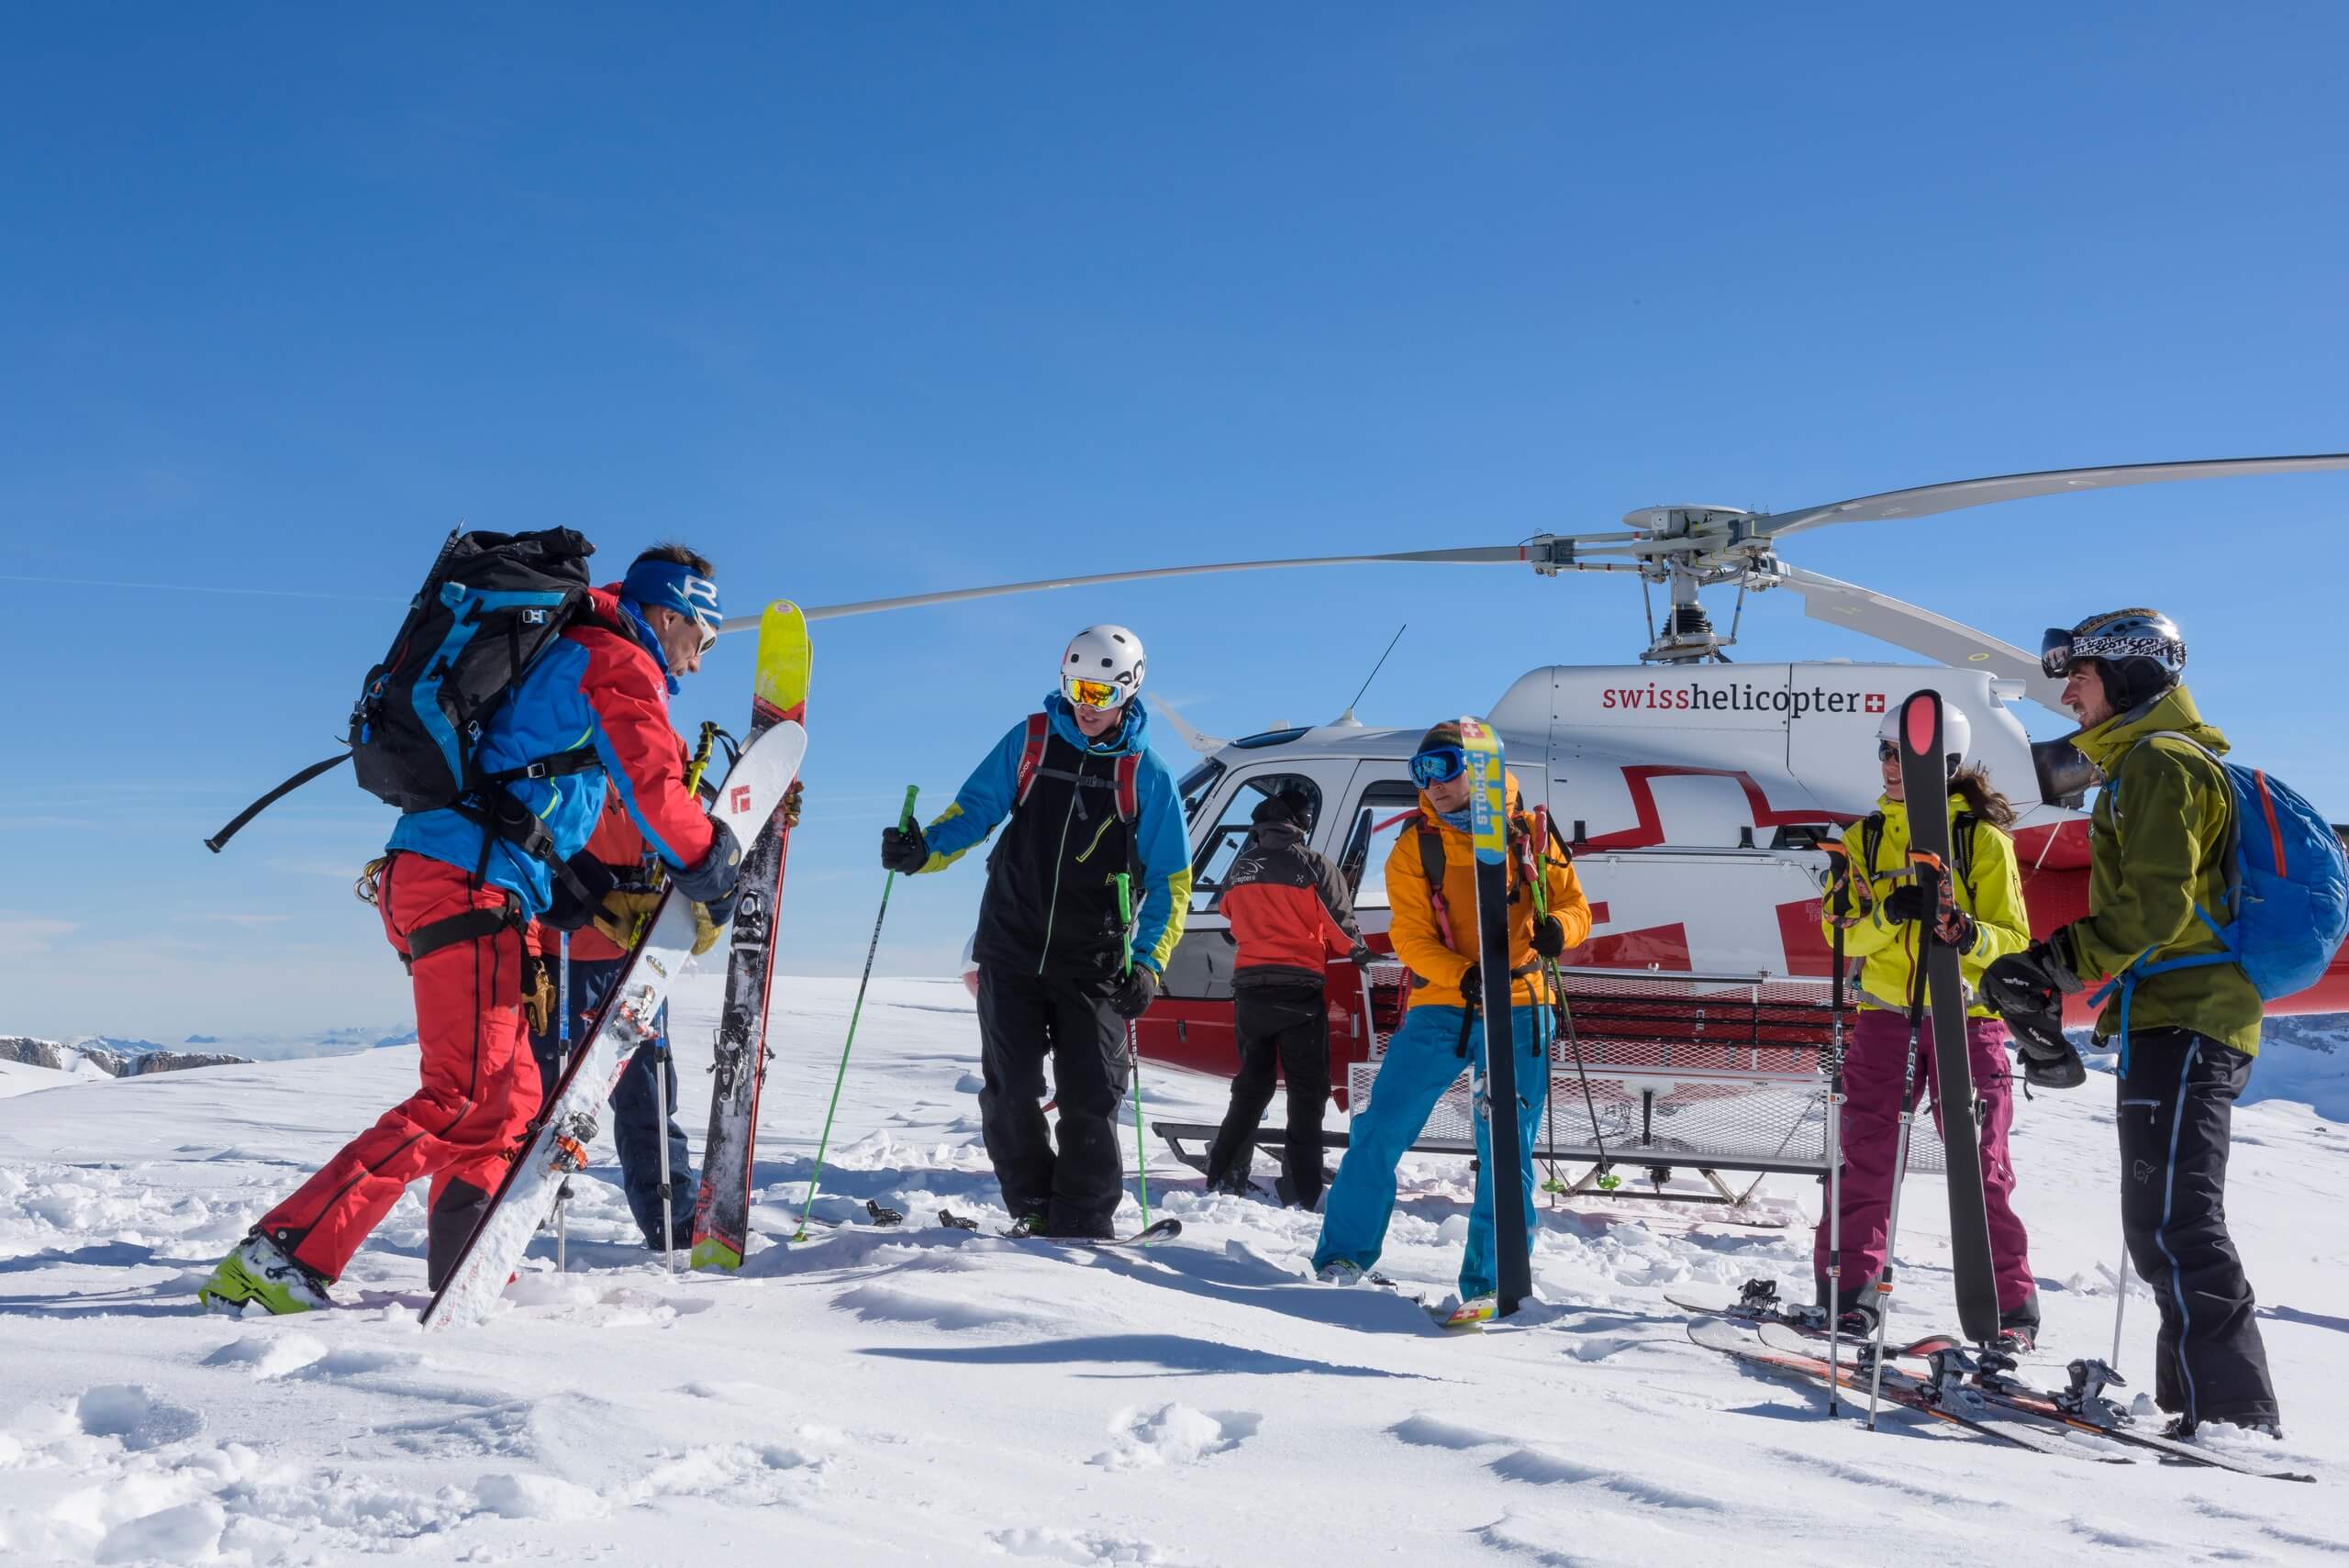 swiss-helicopter-rundflug-ski-tour-winter-schnee